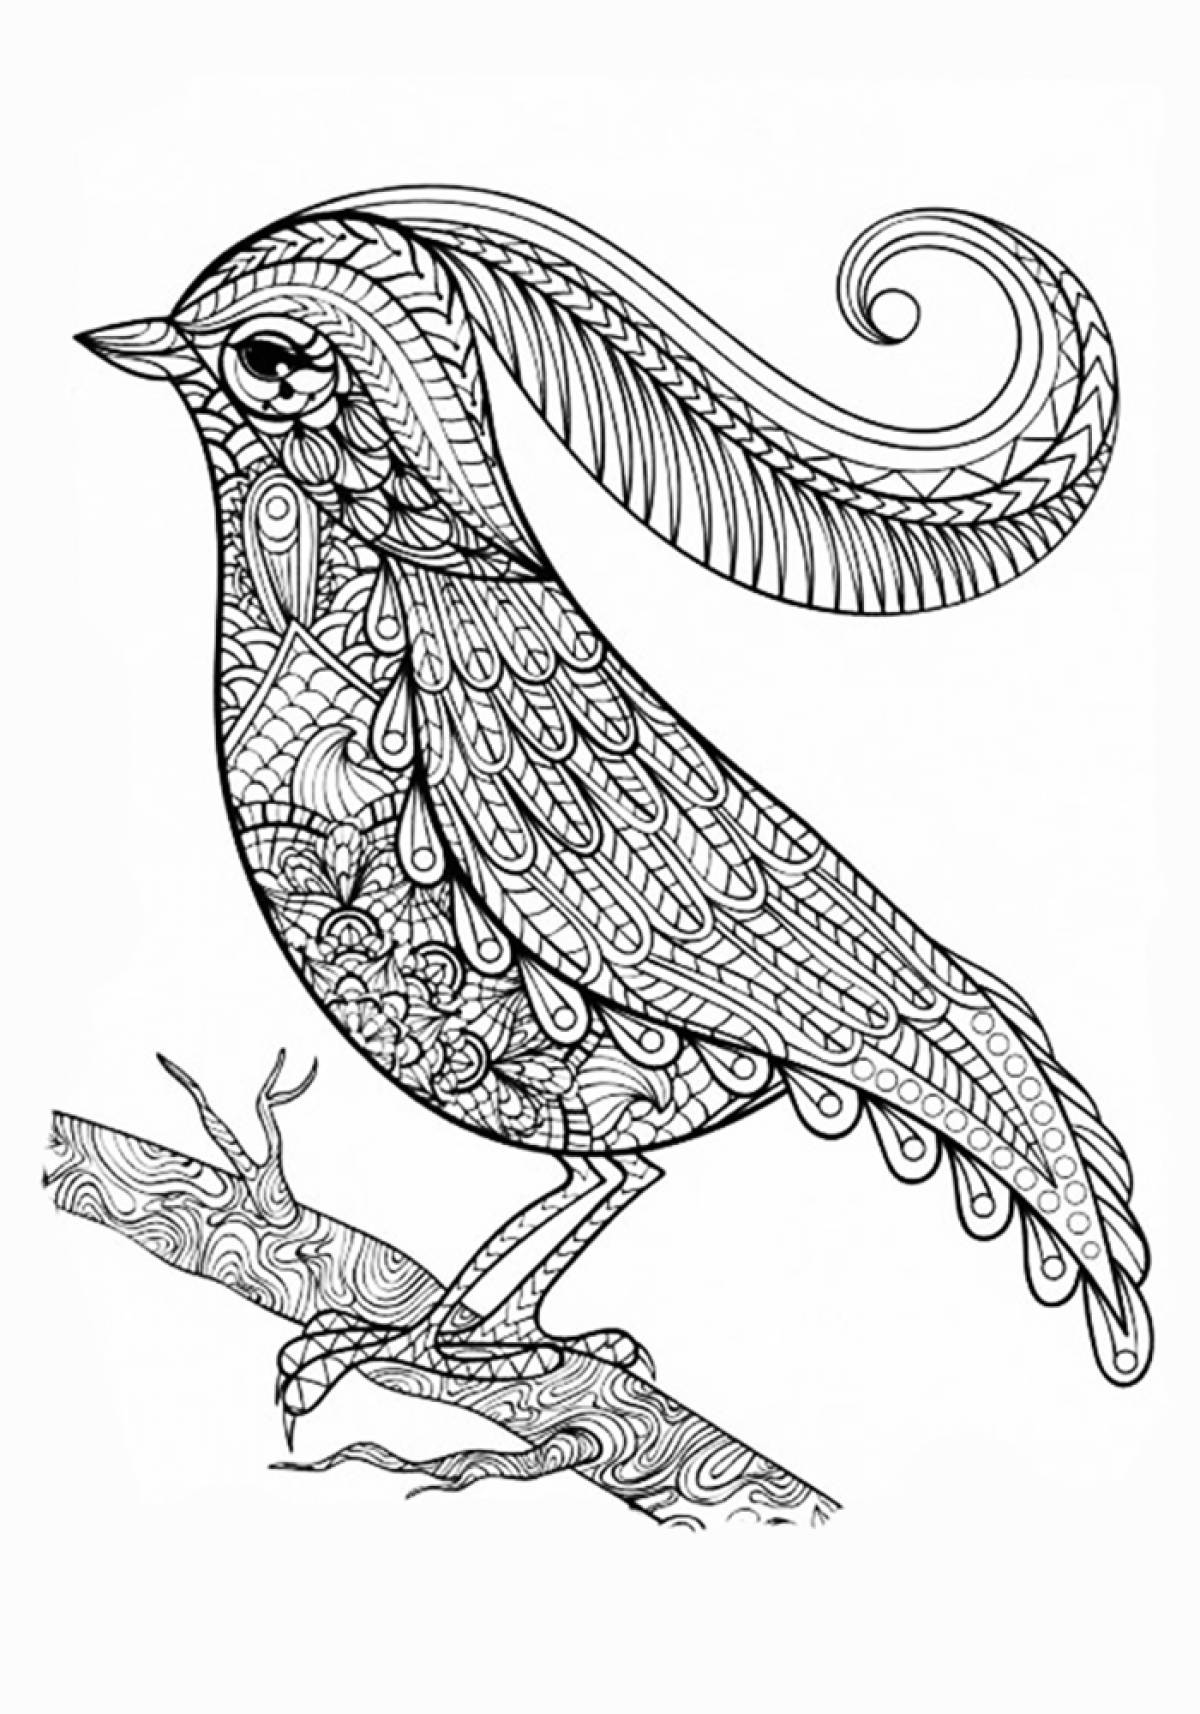 A bird with a crest